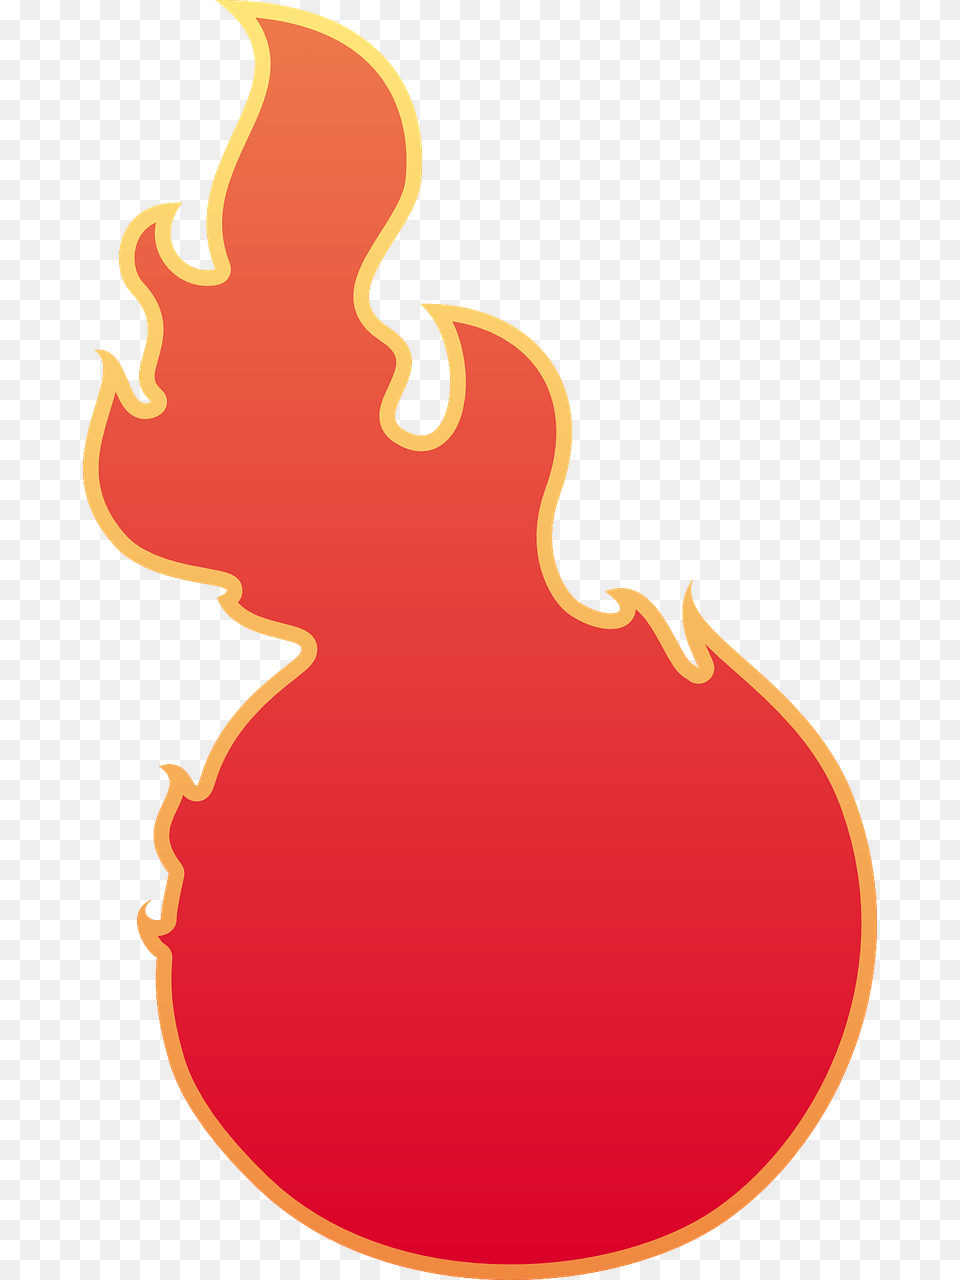 Transparent Red Fire Bolas De Fuego De Videojuegos, Flame, Baby, Person Free Png